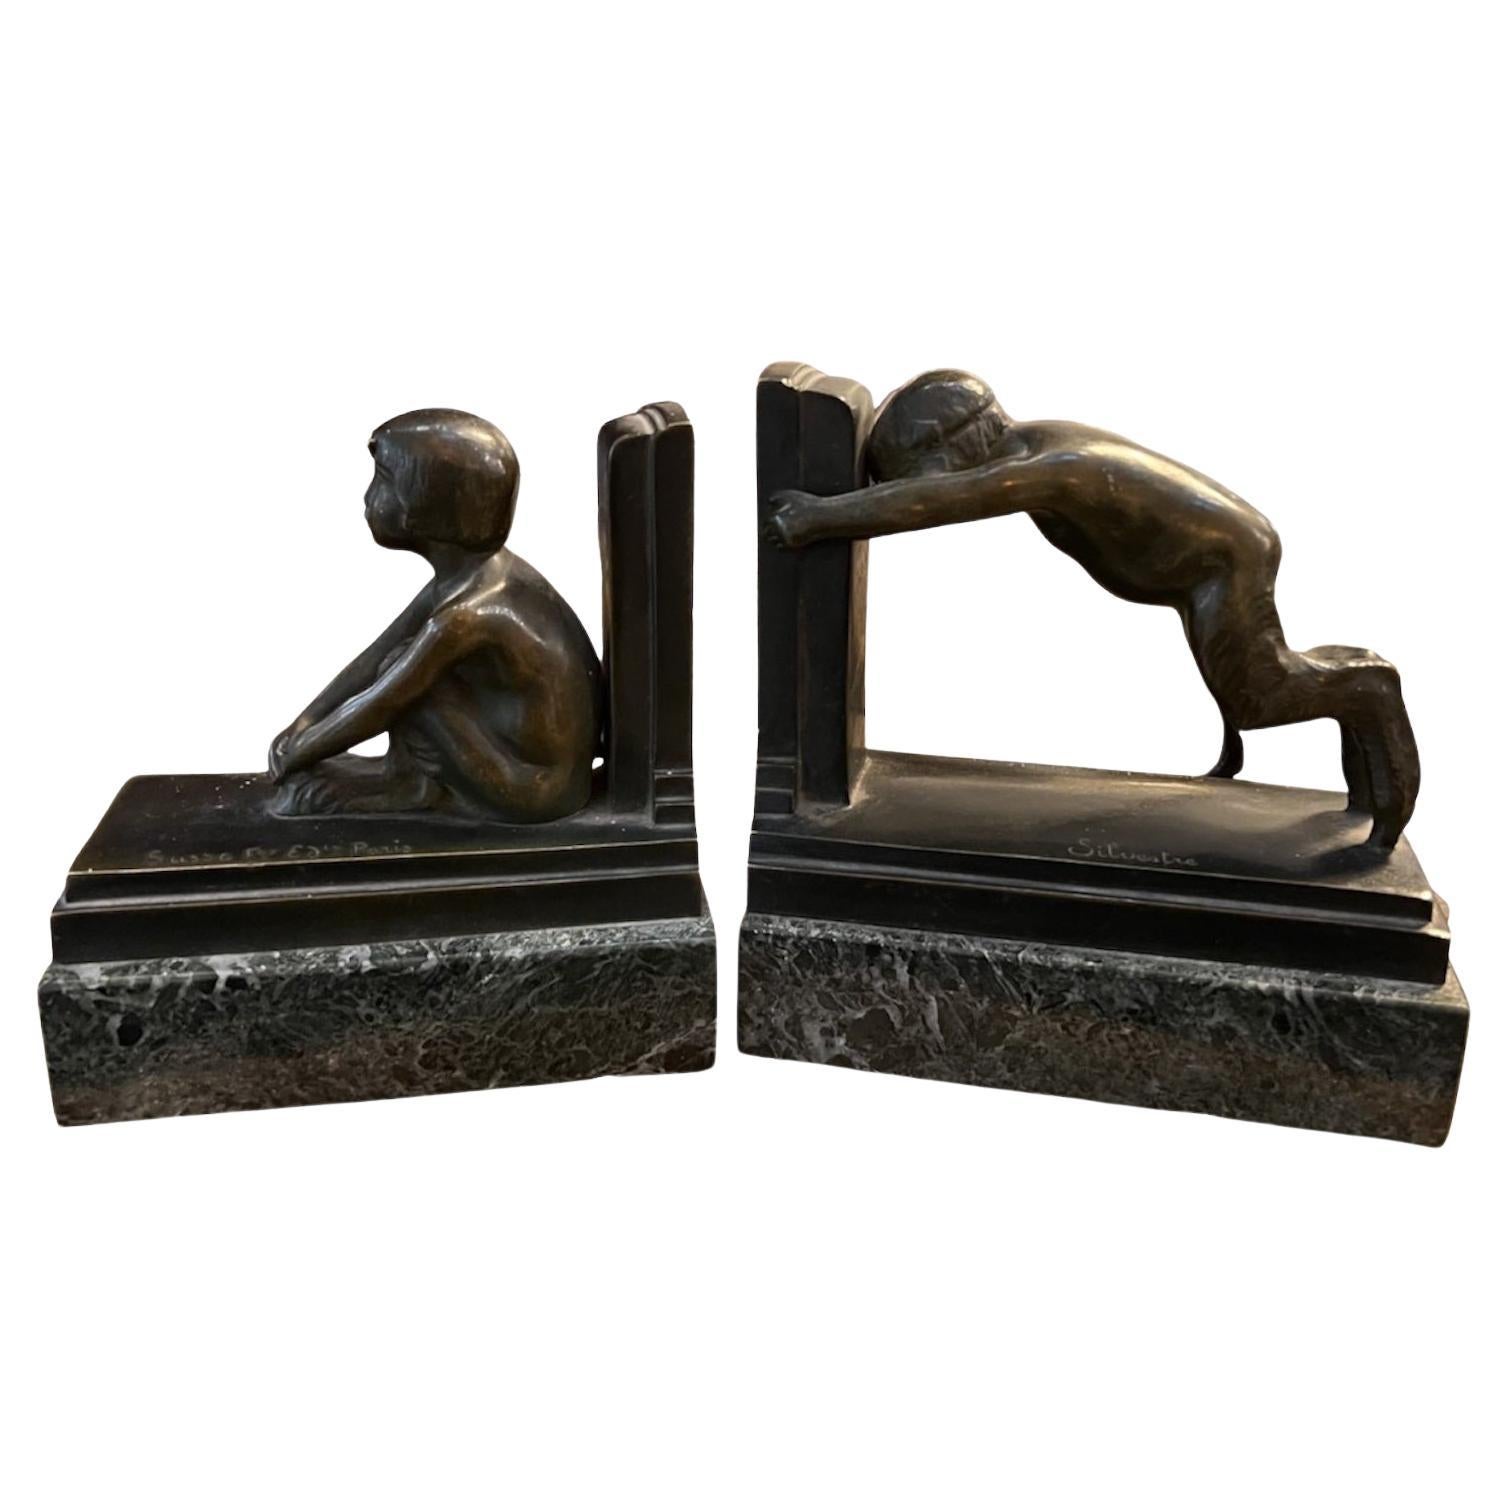 Serre-livres garçons en bronze et marbre, France, style Art déco